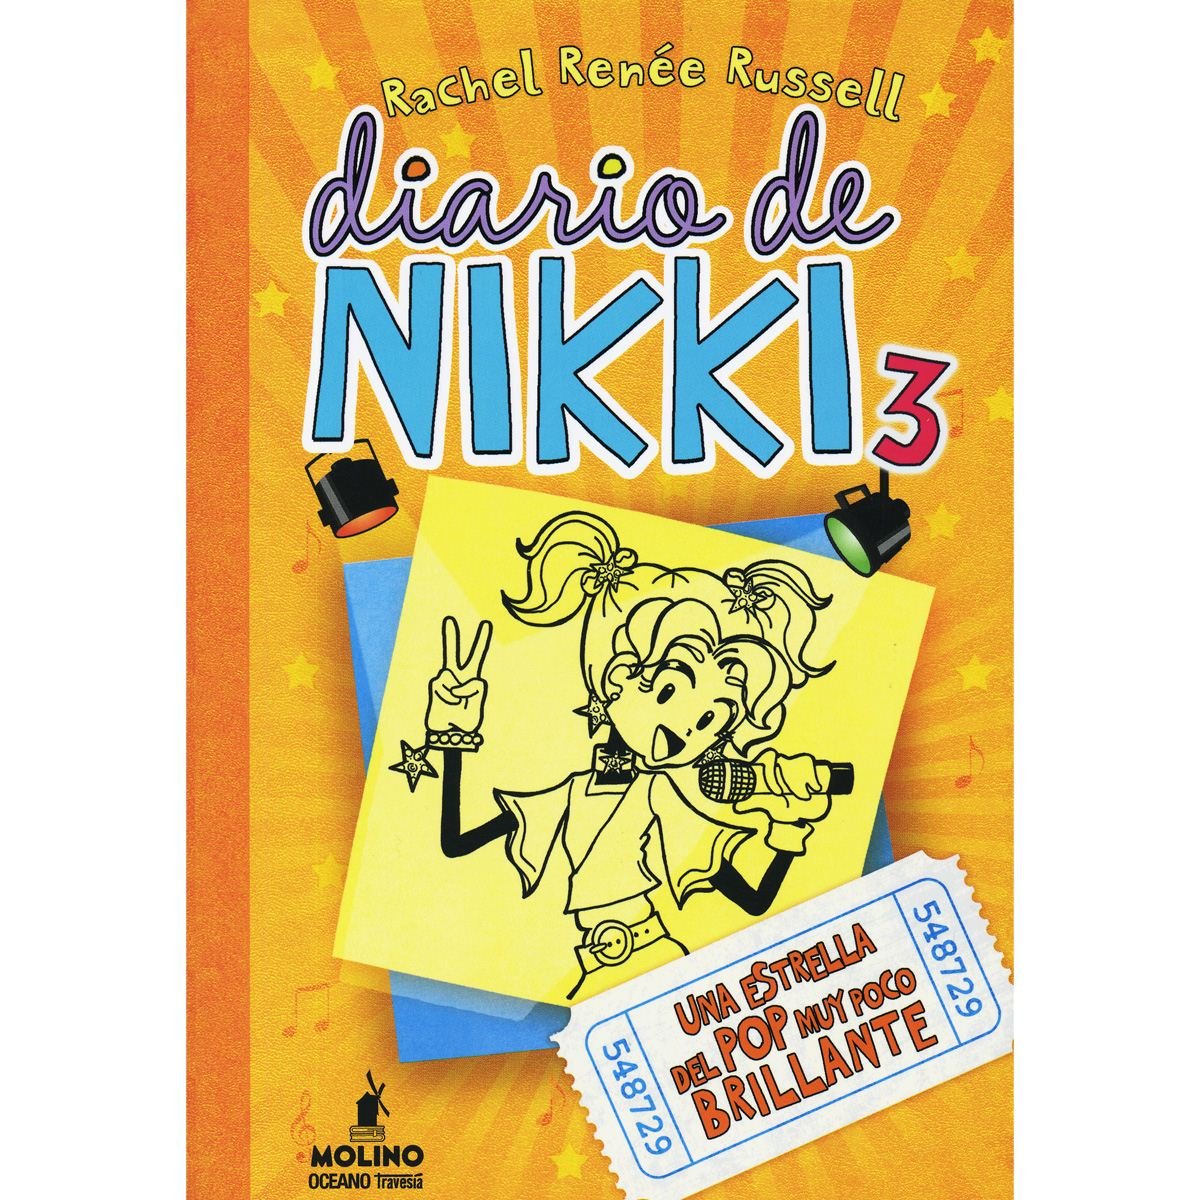 Diario de Nikki 3. Una estrella del pop muy poco brillante